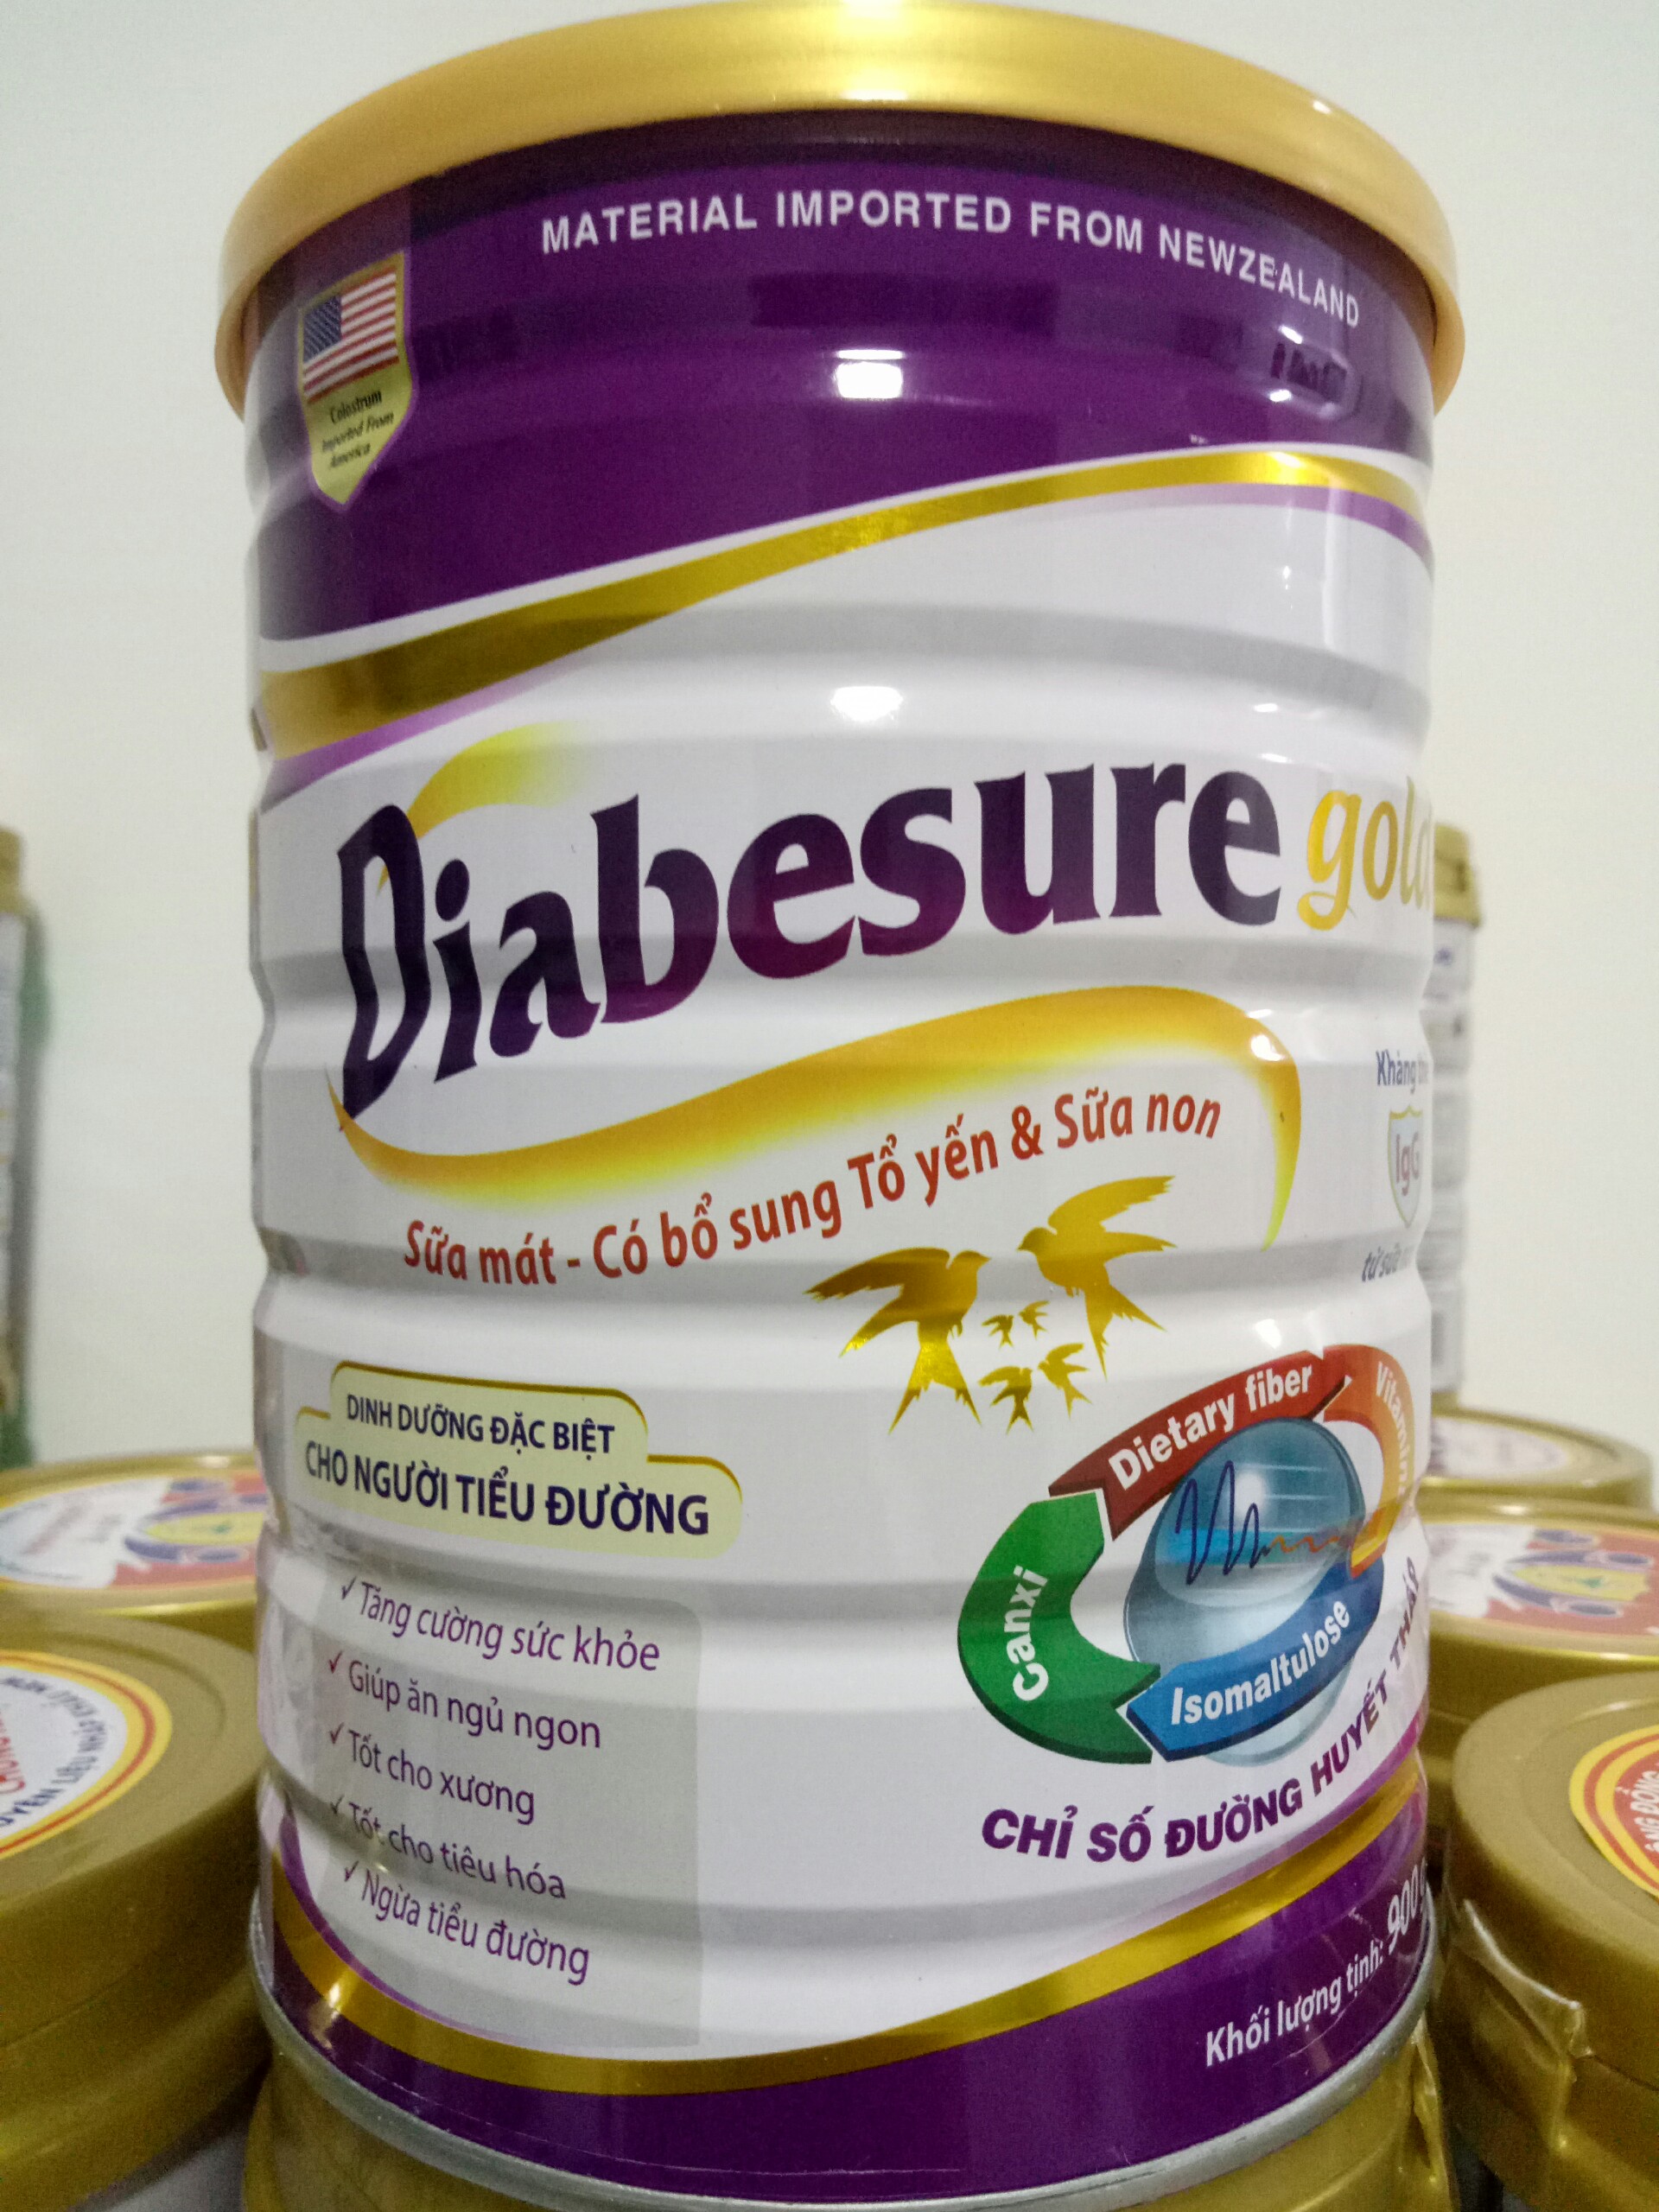 Date mới Sữa bột Diabesure Gold 900g dành cho người tiểu đường bổ sung tổ